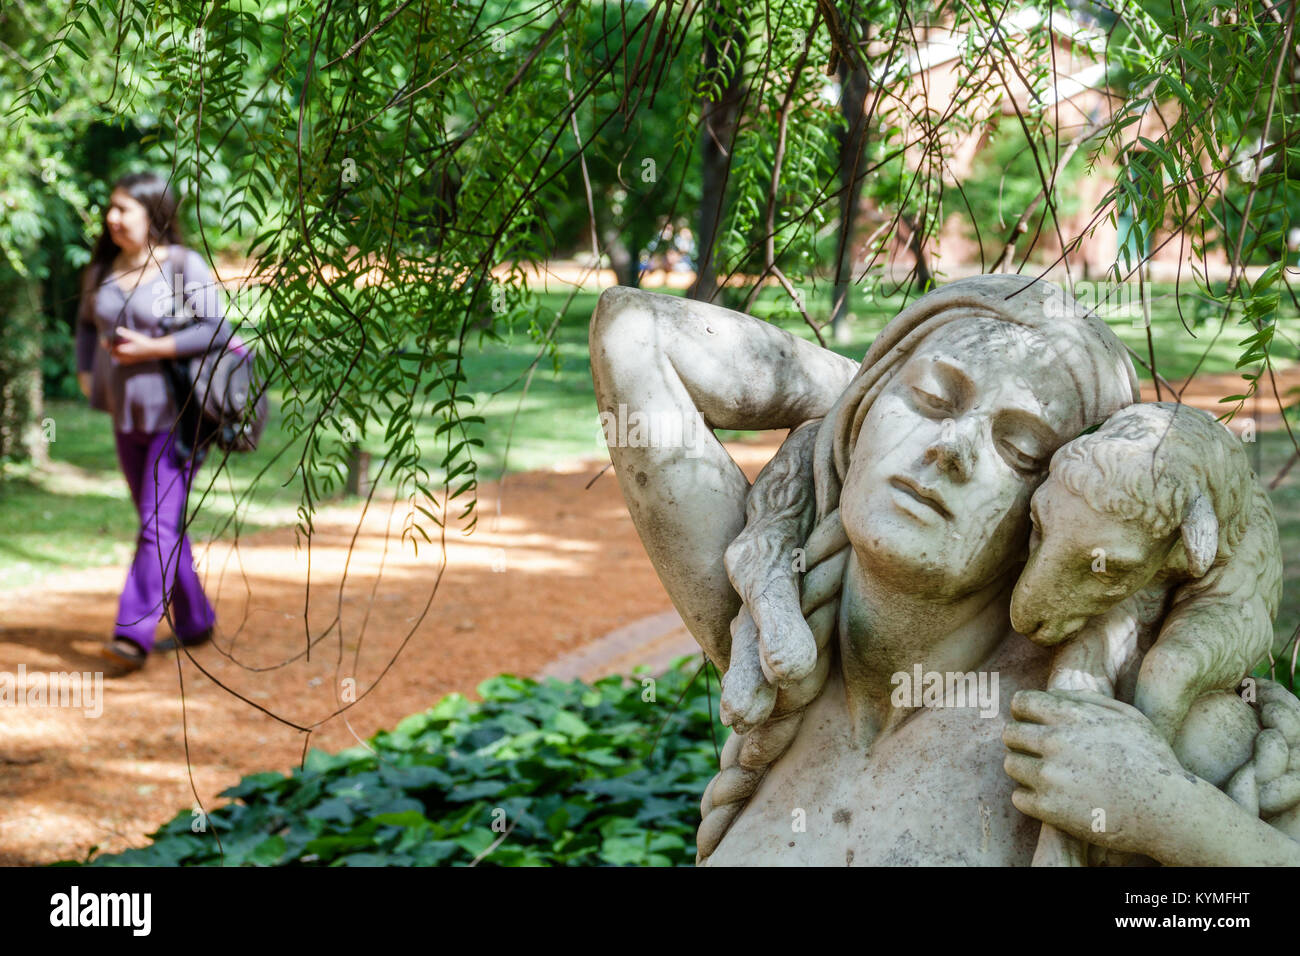 Buenos Aires Argentinien,Palermo,Park,Jardin Botanico Carlos Thays Botanischer Garten,Skulptur,Kunst,Hispanic,ARG171119146 Stockfoto